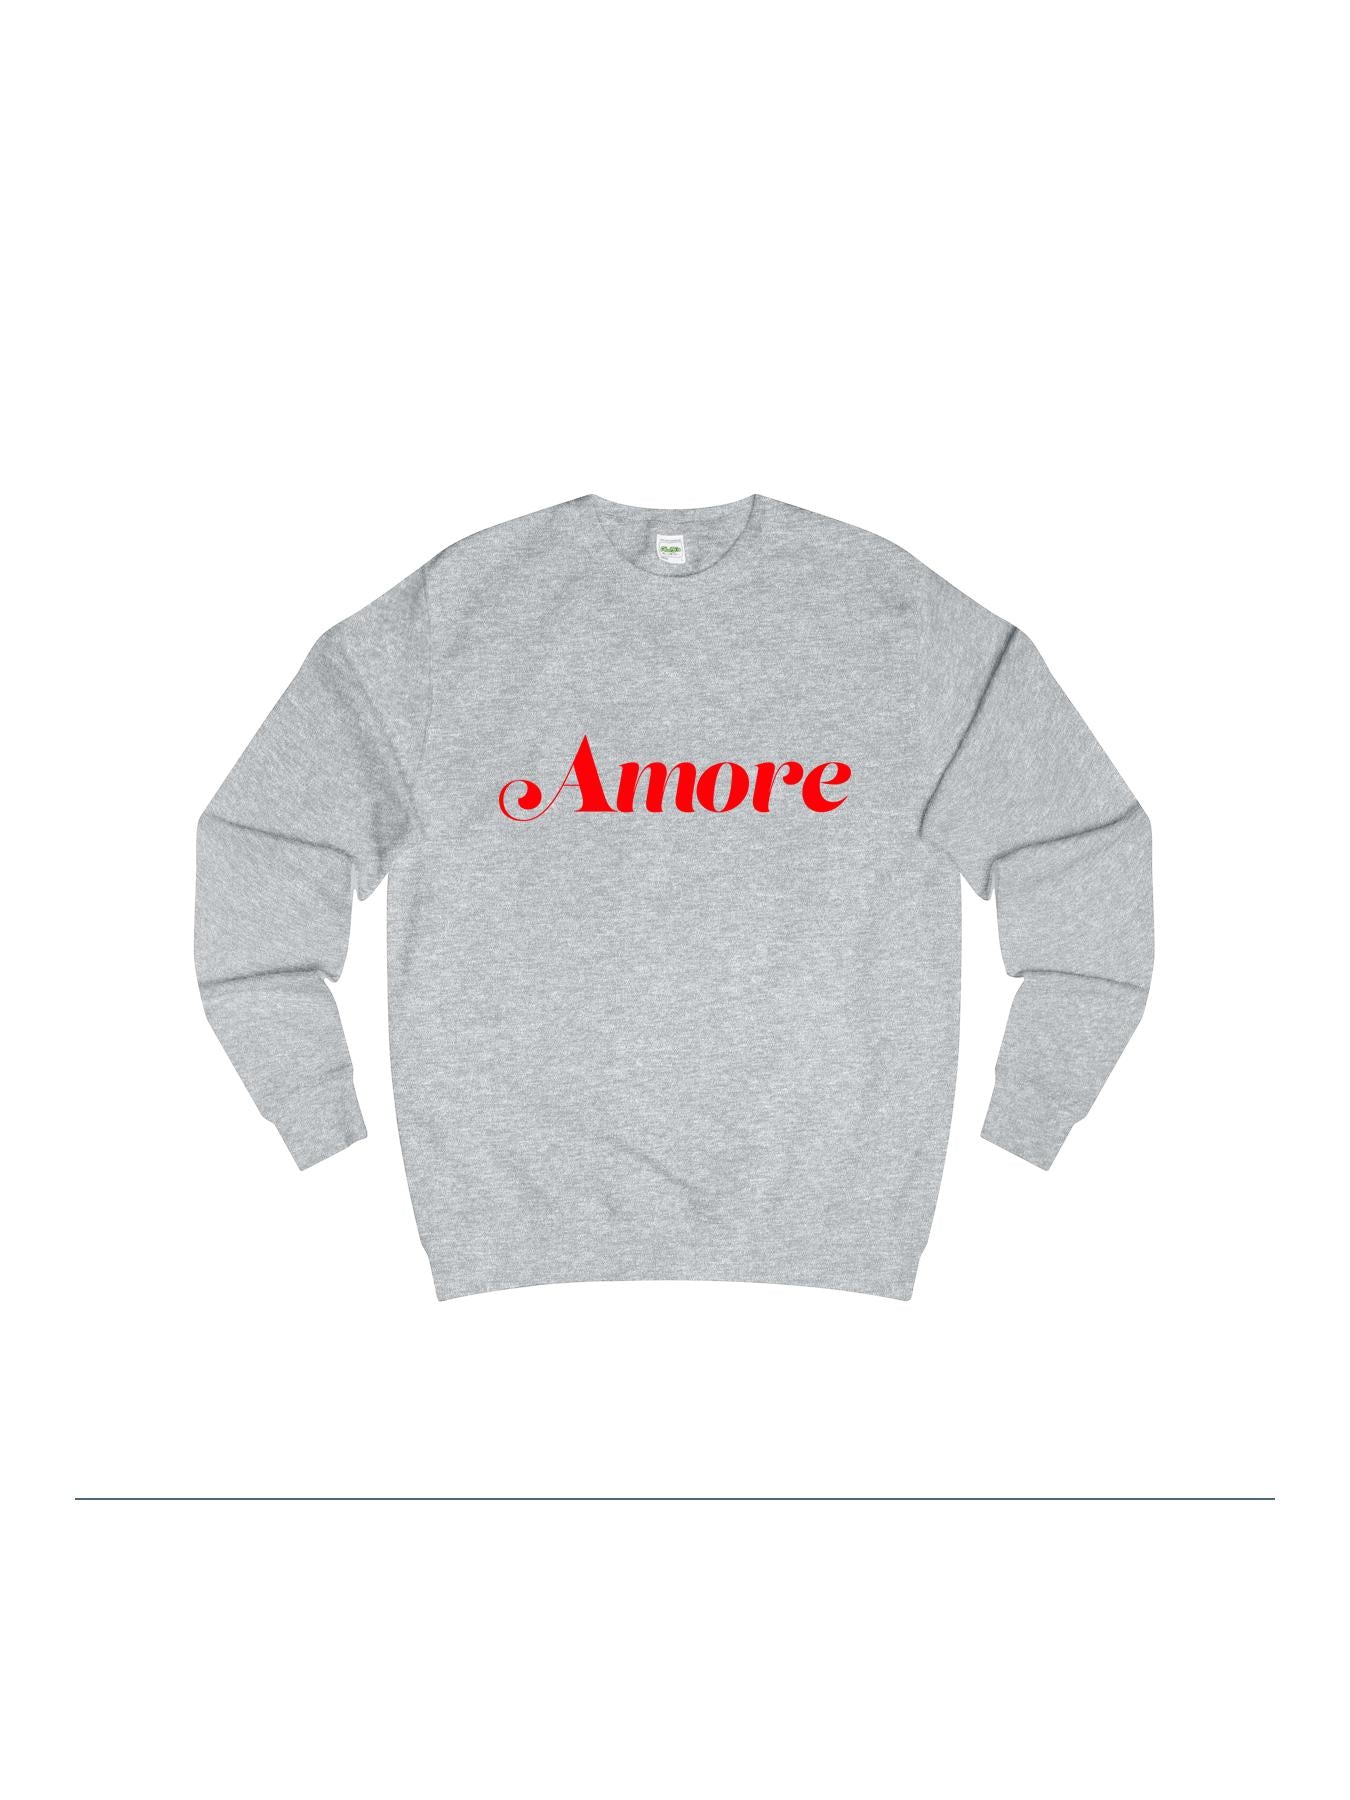 AMORE sweatshirt